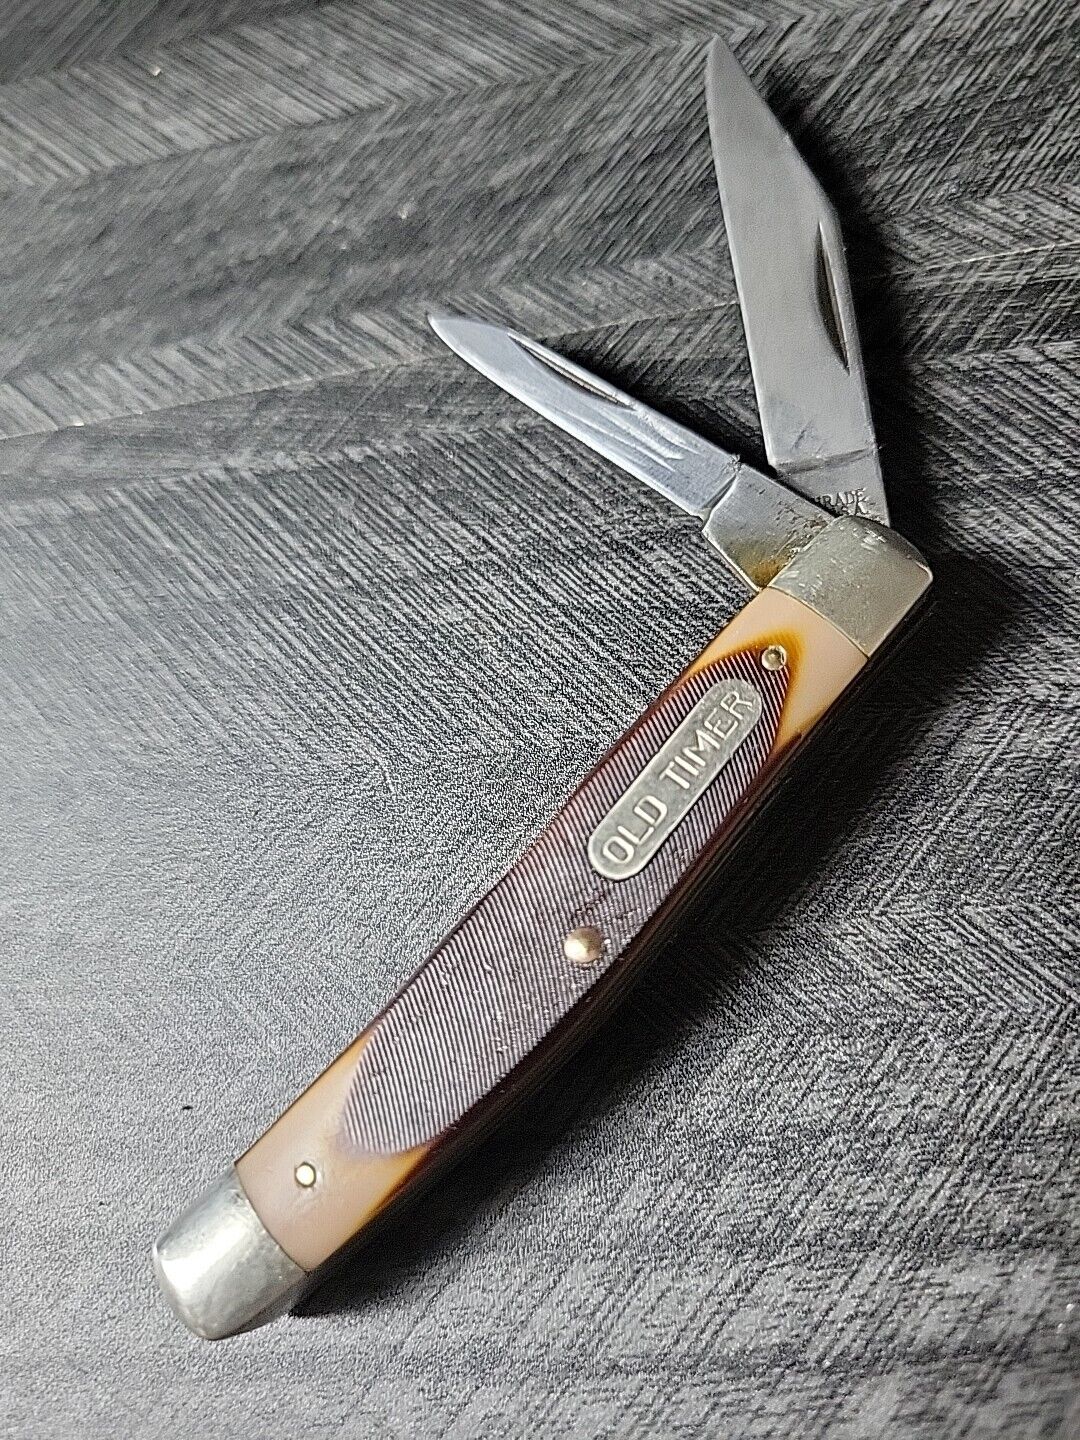 Vintage Schrade Old Timer Pocket Knife 330T 2 Blade Stockman